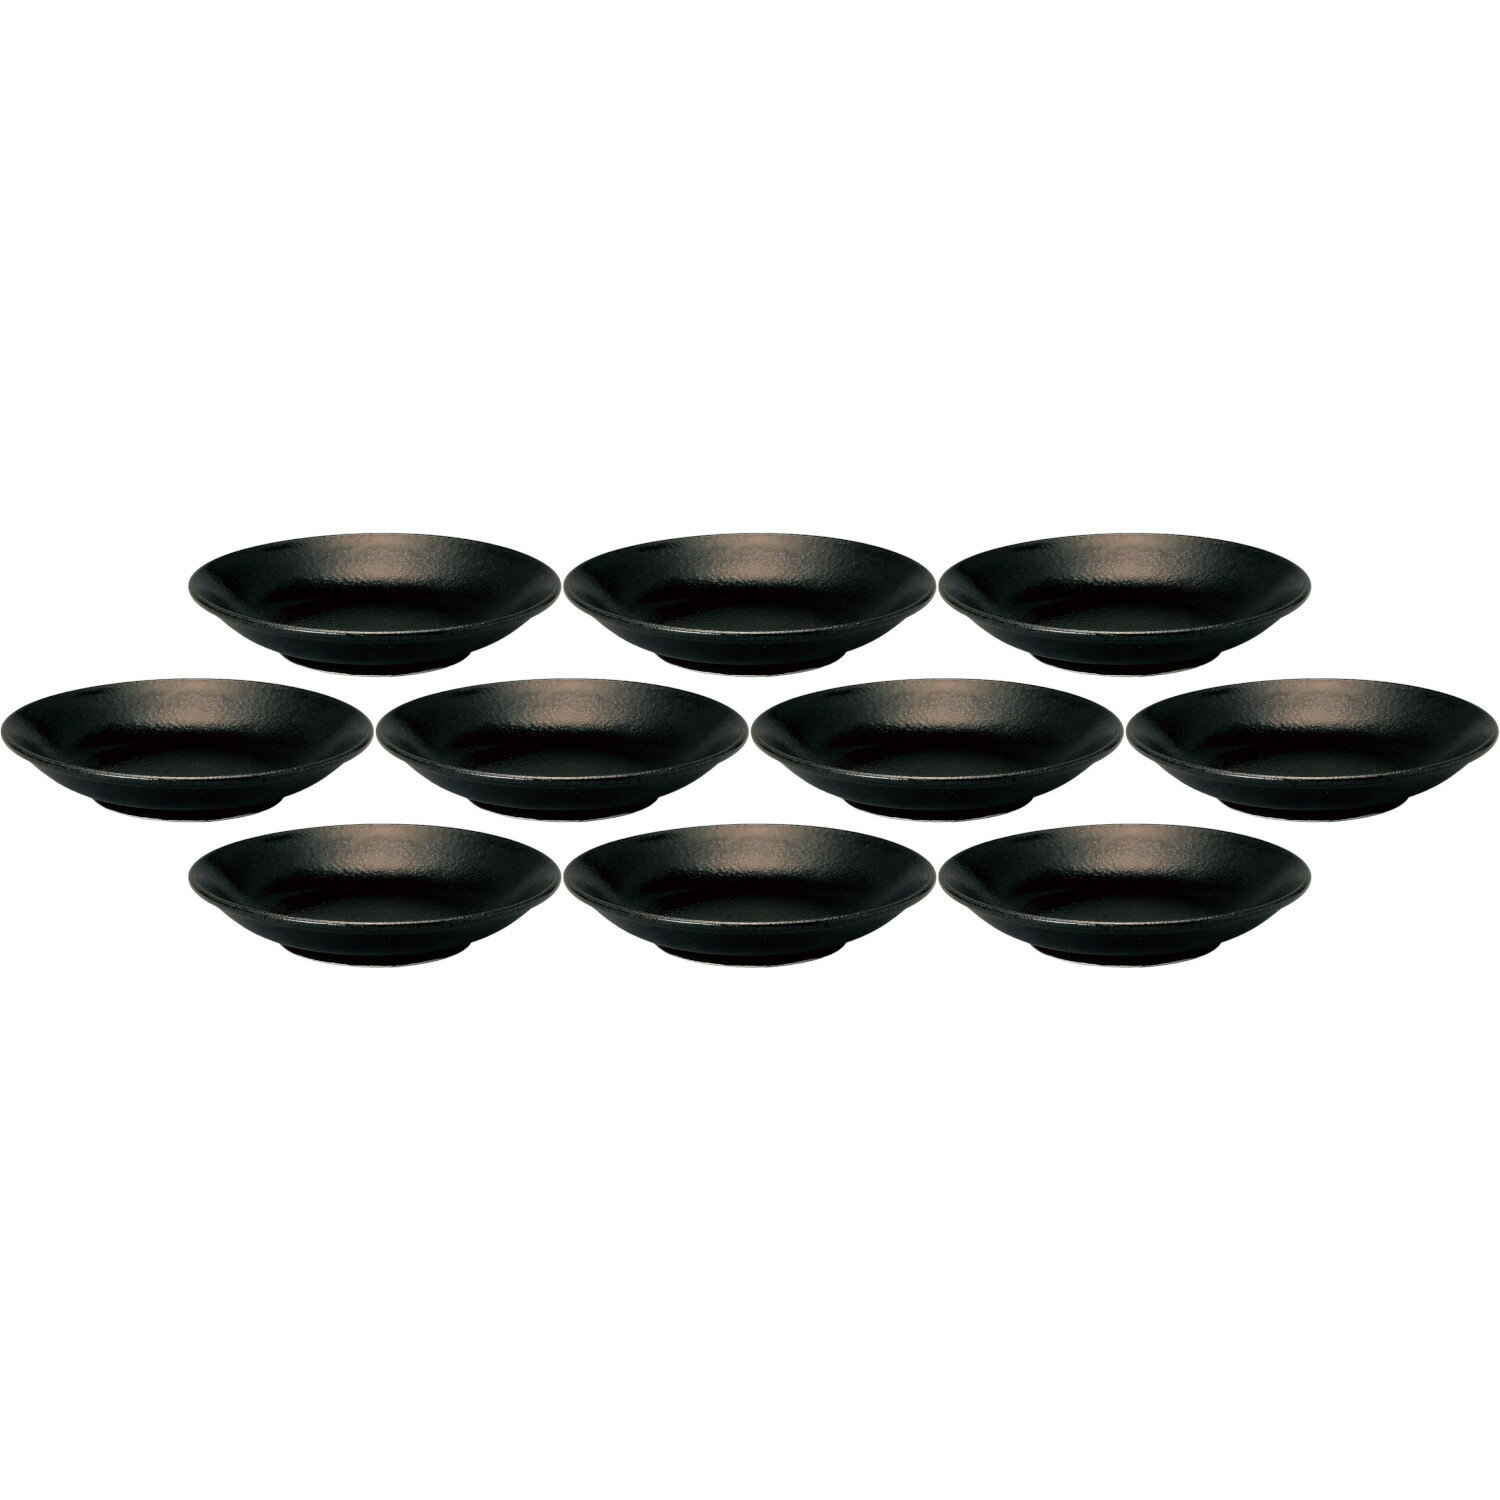 10個セット 和風中華 メタ玉21cm深皿 黒耀 [21.1×4.3cm] | 中華食器 中華皿 メタ深皿 メインプレート ブラック